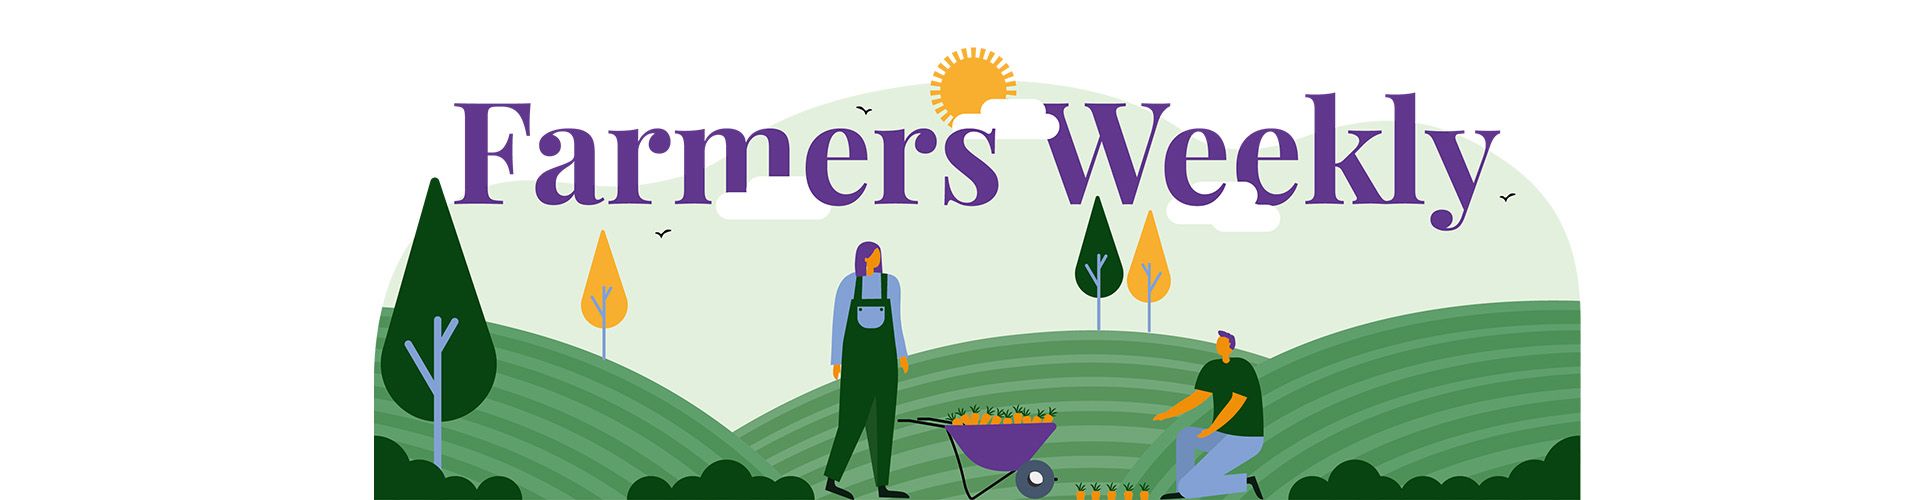 farmers weekly banner.jpg